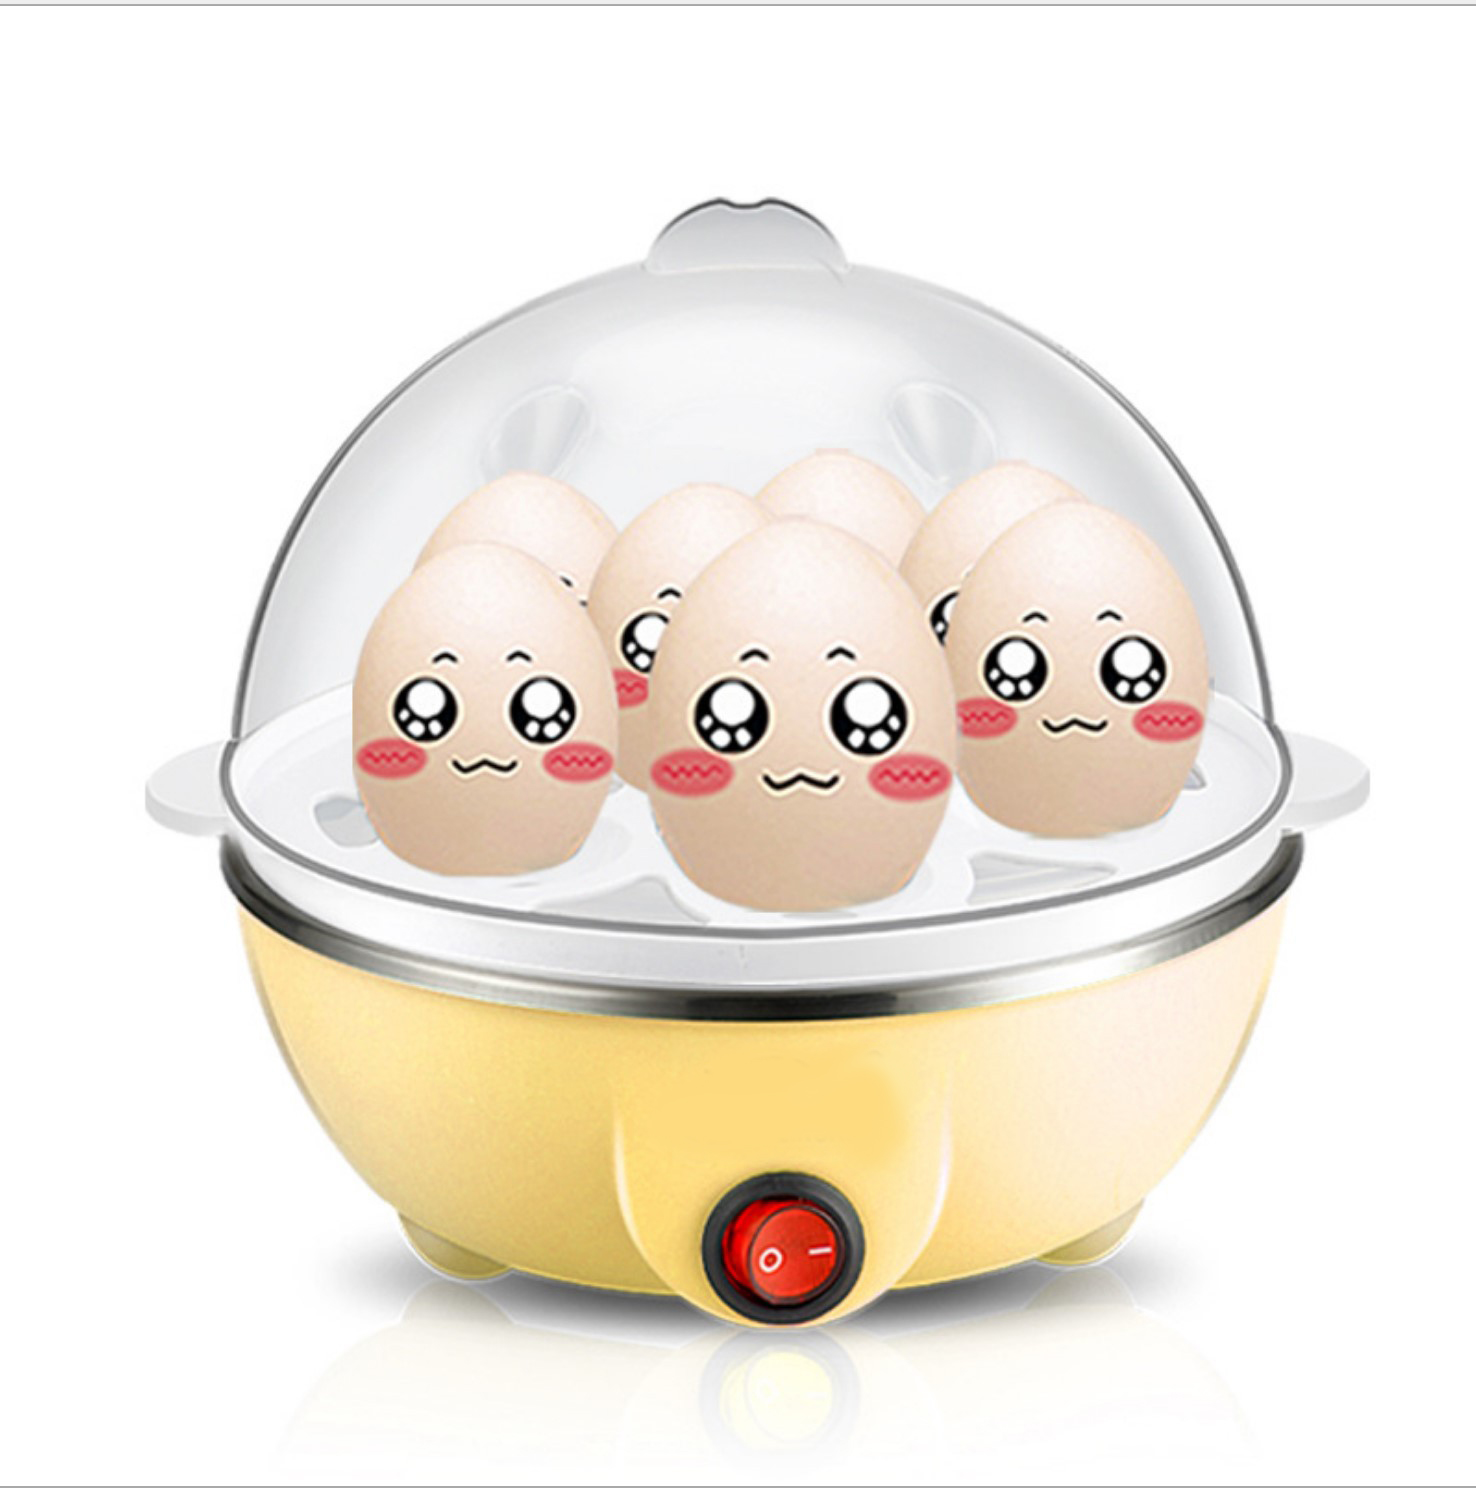 เครื่องลวกไข่  เลือกความสุขได้ ใช้งานสะดวก เสร็จใน 5 นาที ฟรี!! (เครื่องต้มไข่)